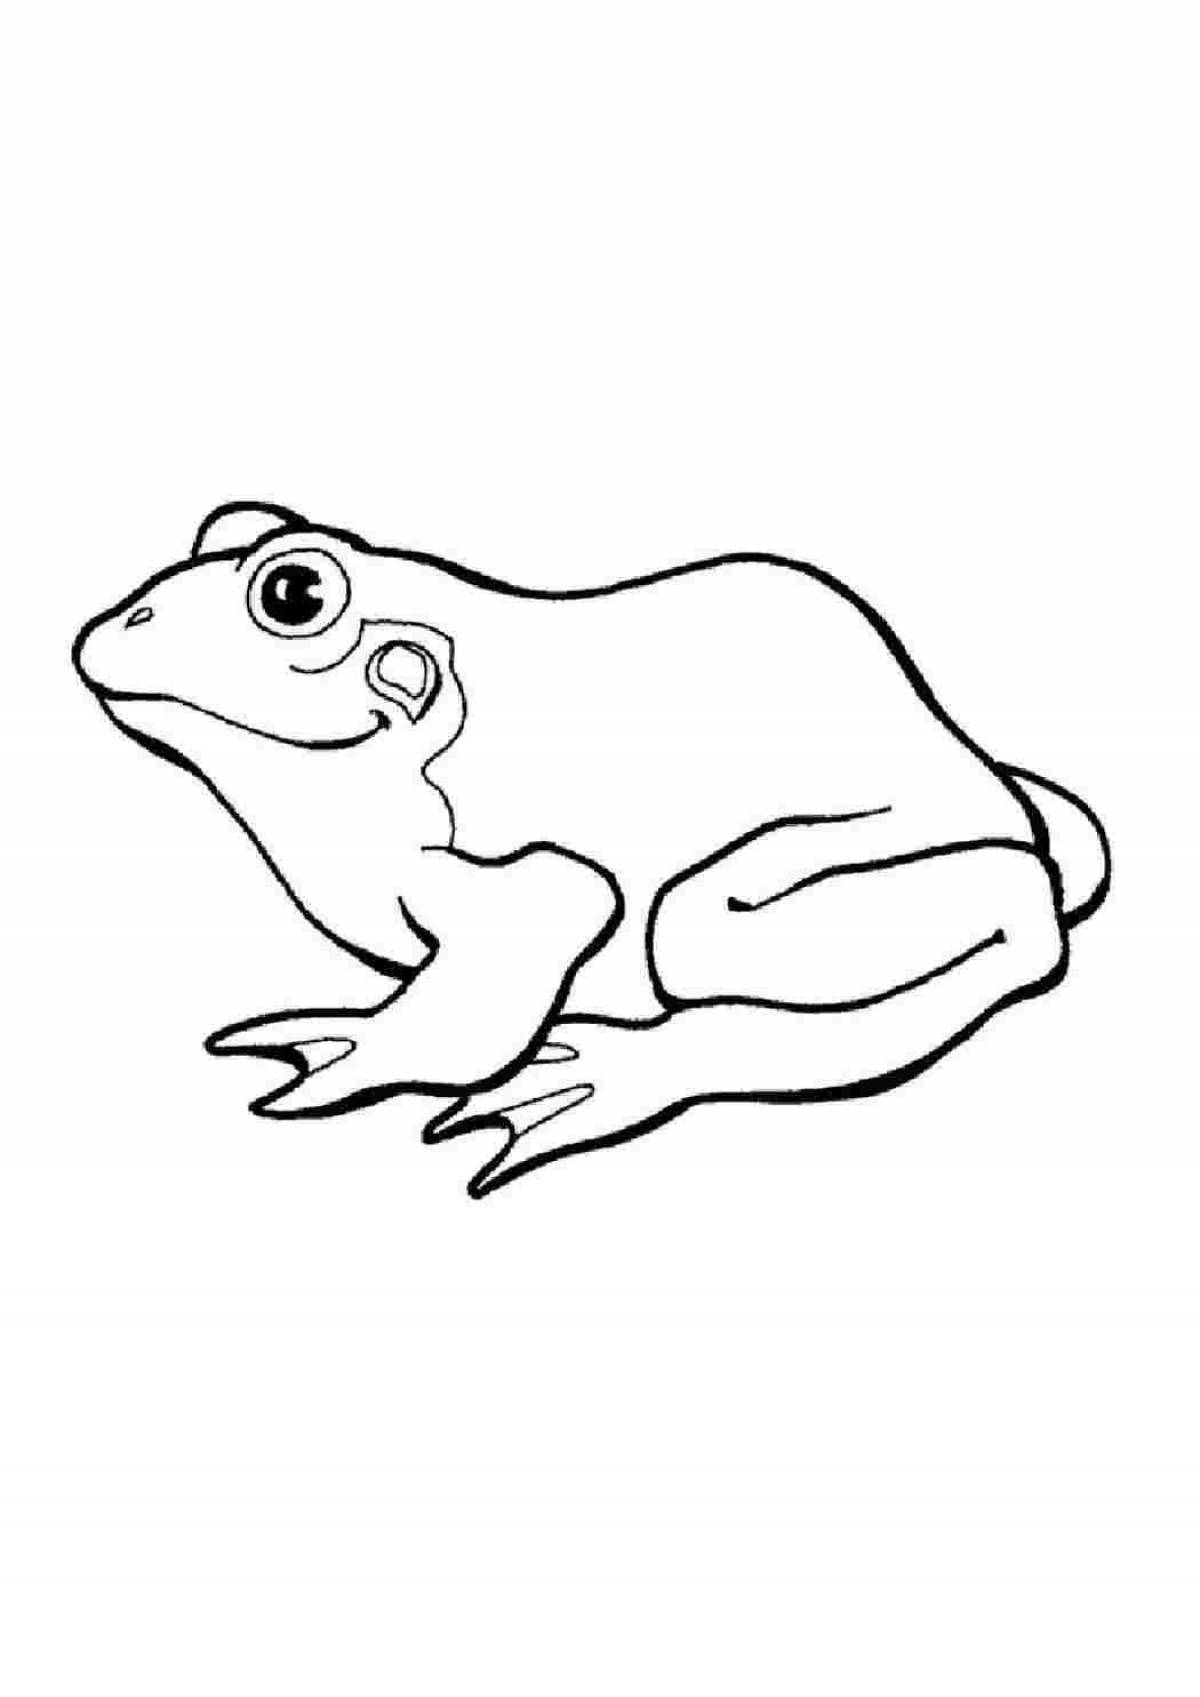 Юмористический рисунок лягушки для детей